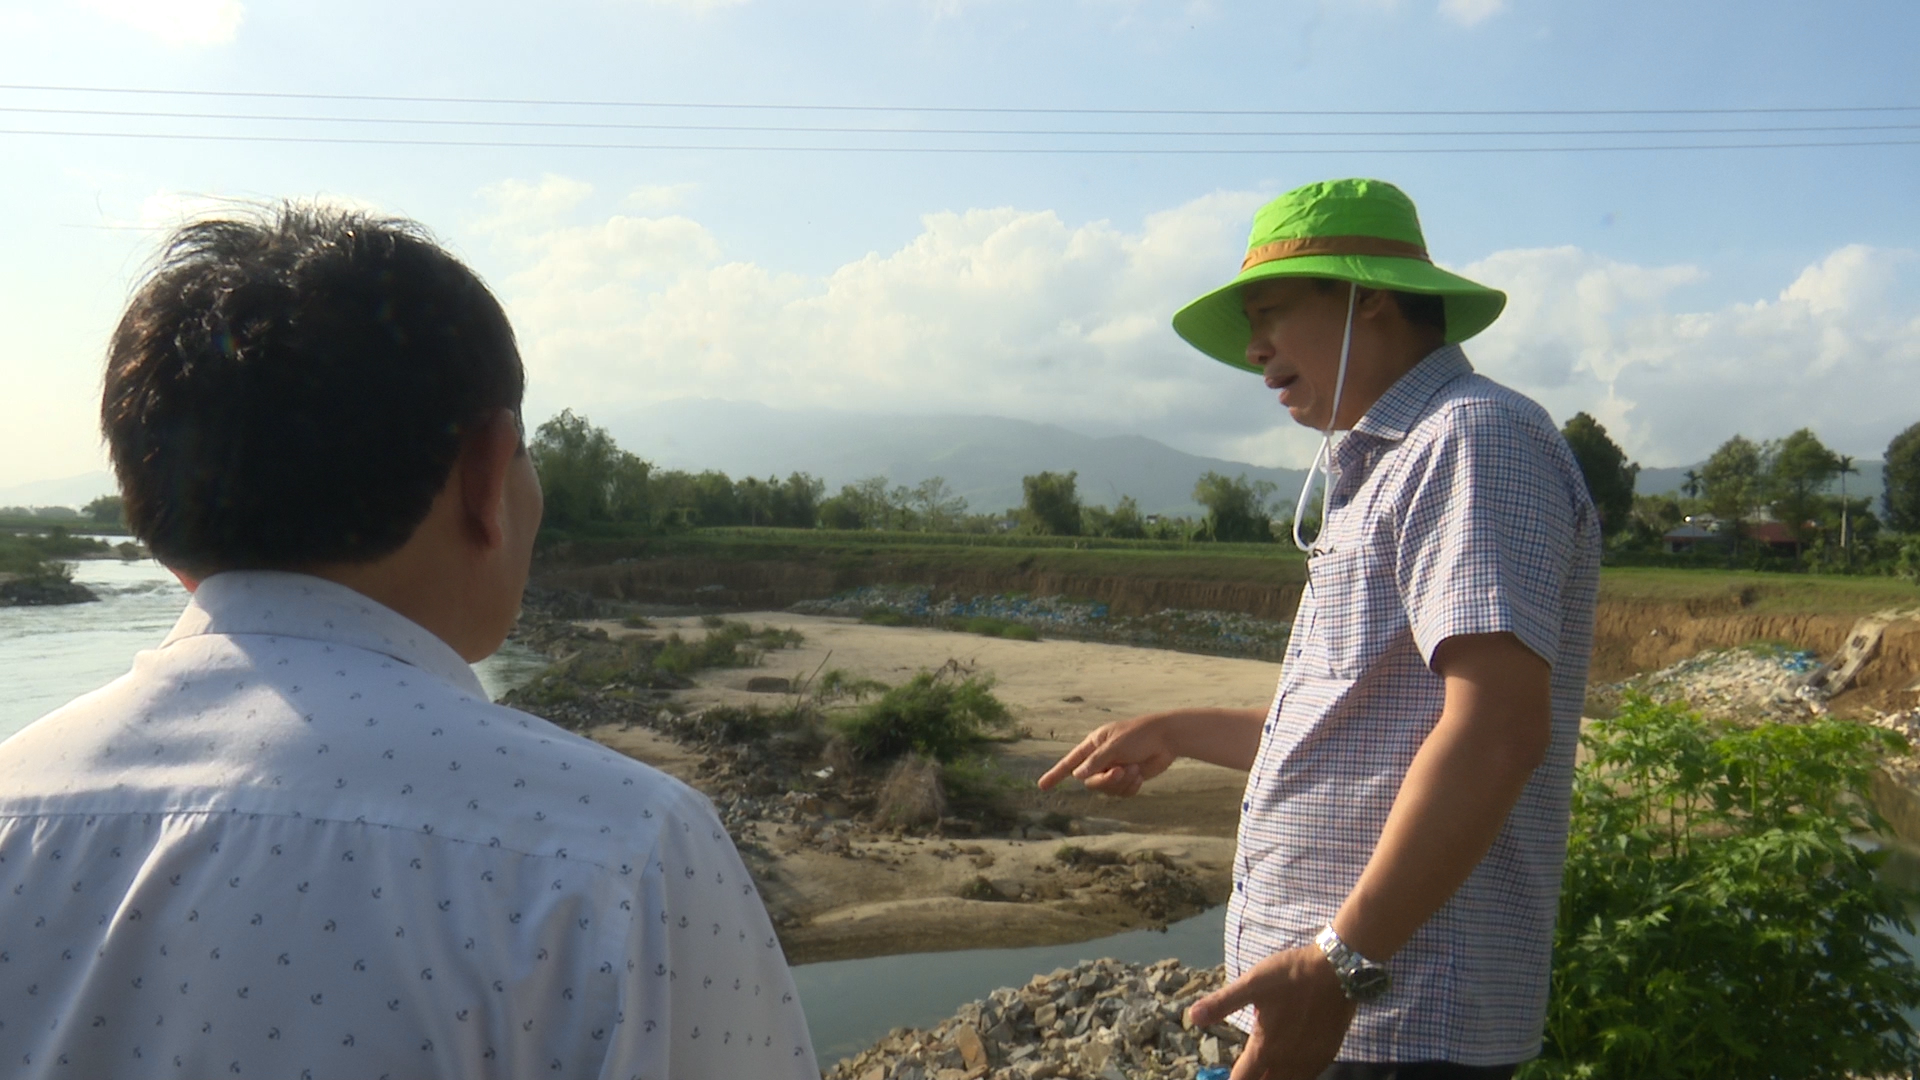 Khu vực bờ sông Quảng Huế qua thôn Phú Nghĩa đang bị sạt lở nghiêm trọng. Ảnh: N.D